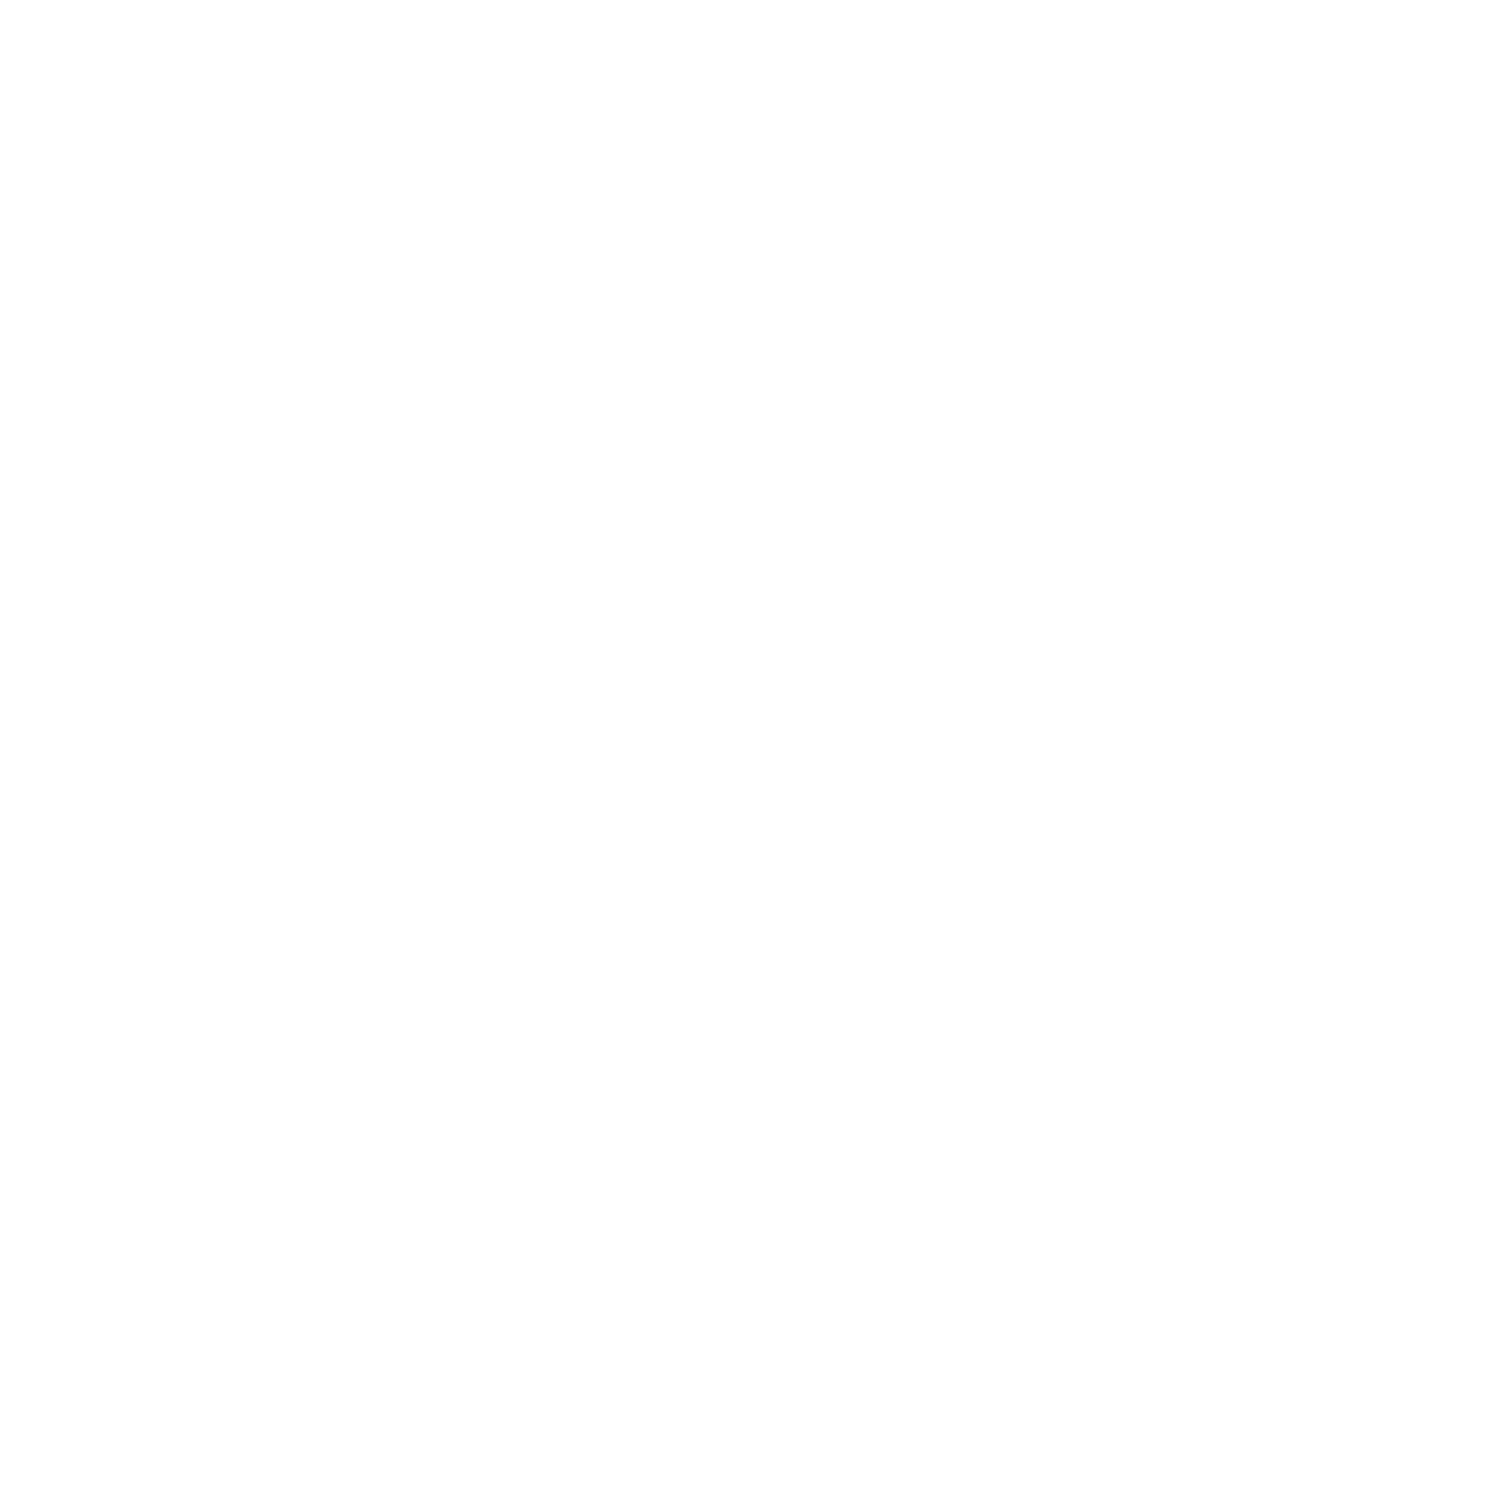 ROB LAW